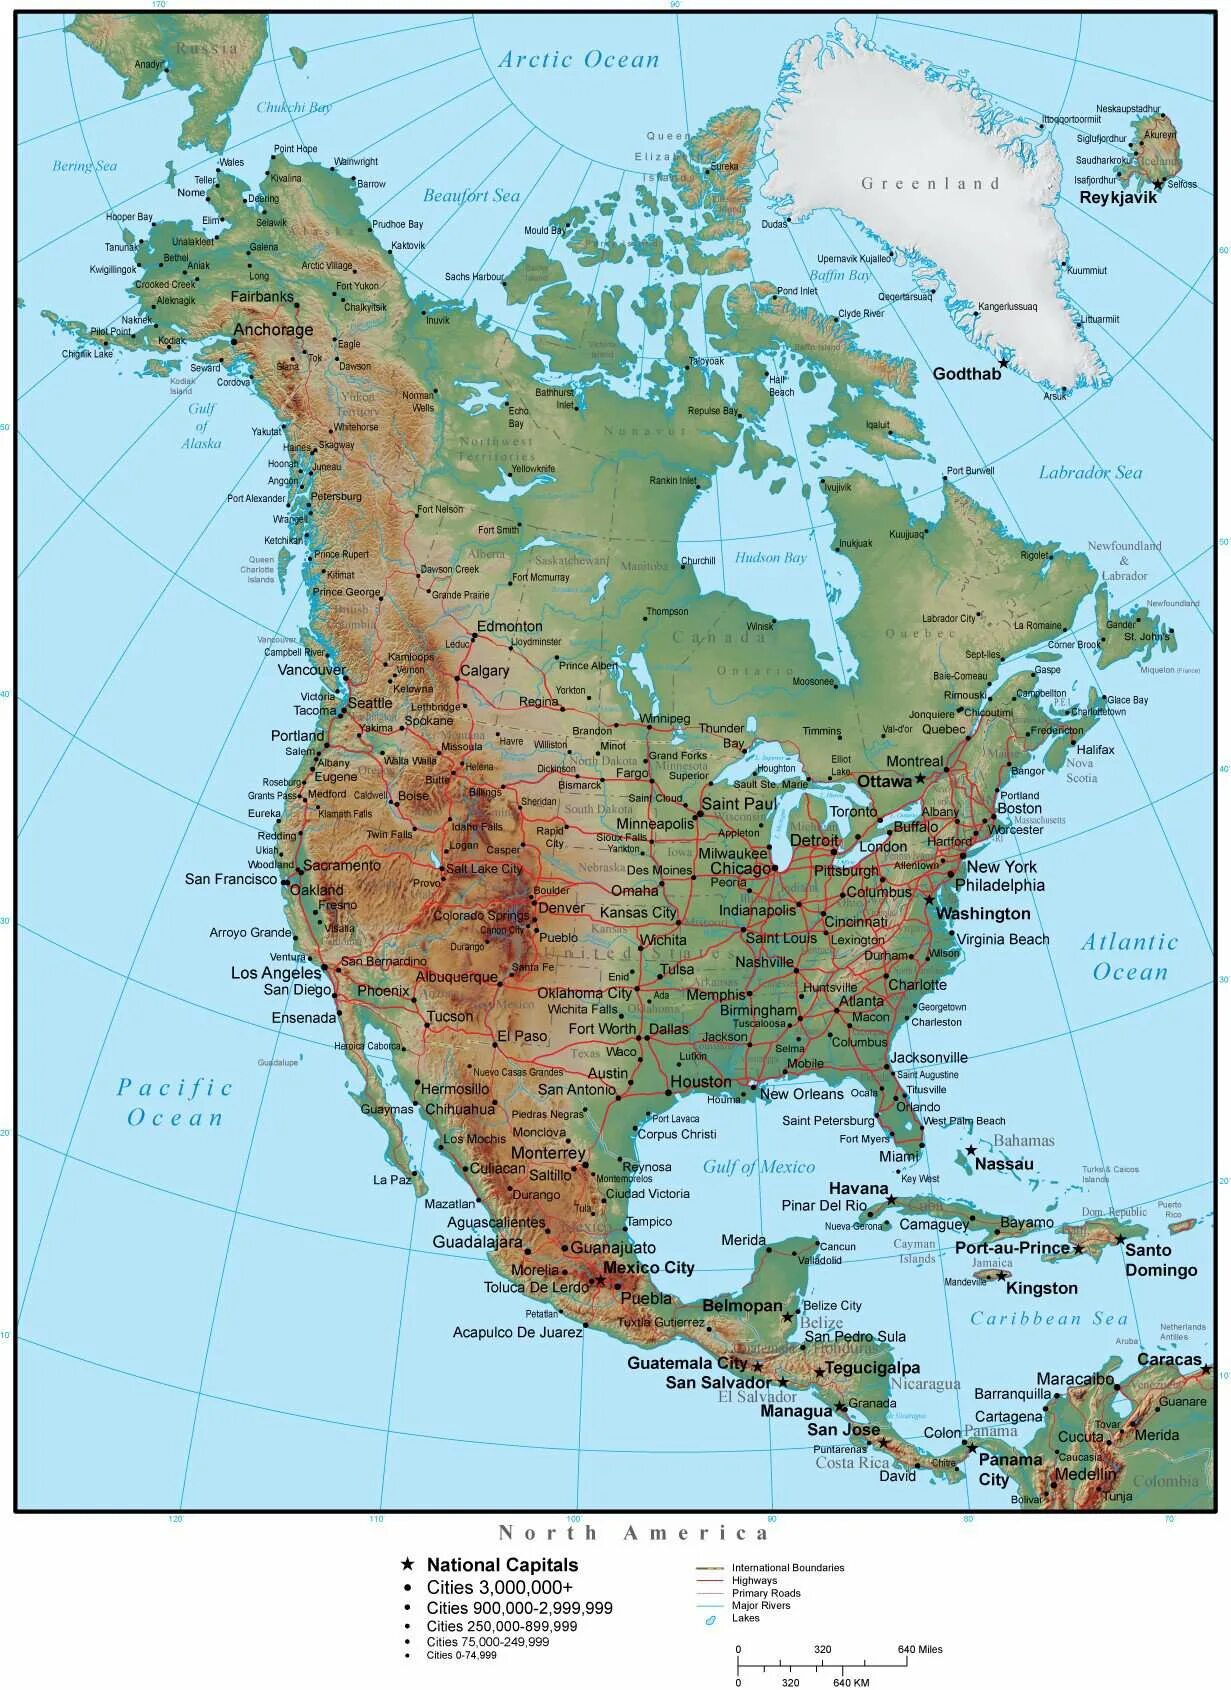 Название расположенных в северной америке. Горы Кордильеры на физической карте Северной Америки. Скалистые горы на карте Северной Америки. Горы скалистые горы на карте Северной Америки. Скалистые горы на контурной карте Северной Америки.